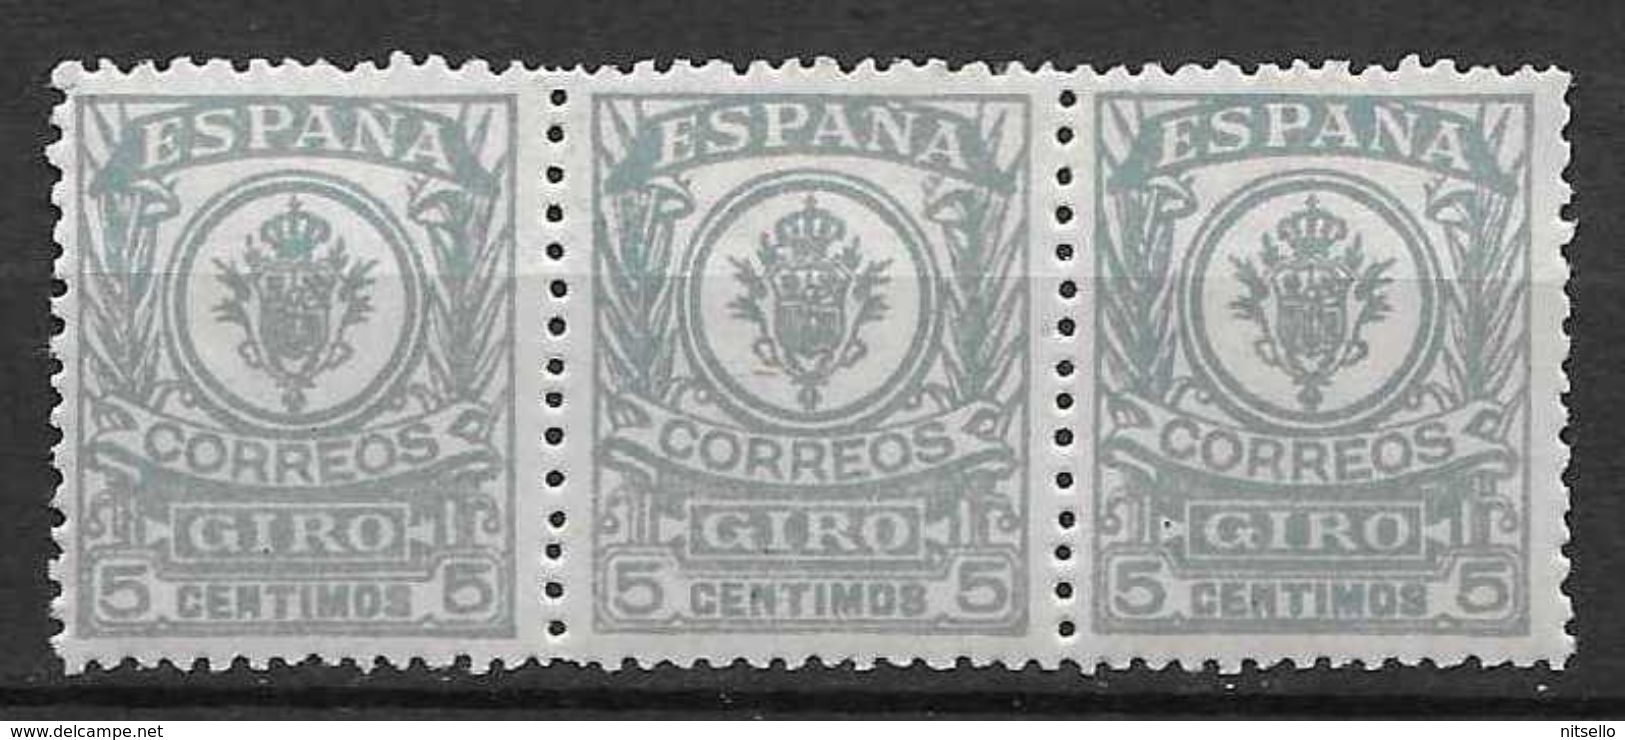 LOTE 1891 D  ///  (C025) ESPAÑA GIRO  EDIFIL Nº 1  BLOQ 3 **MNH - Revenue Stamps